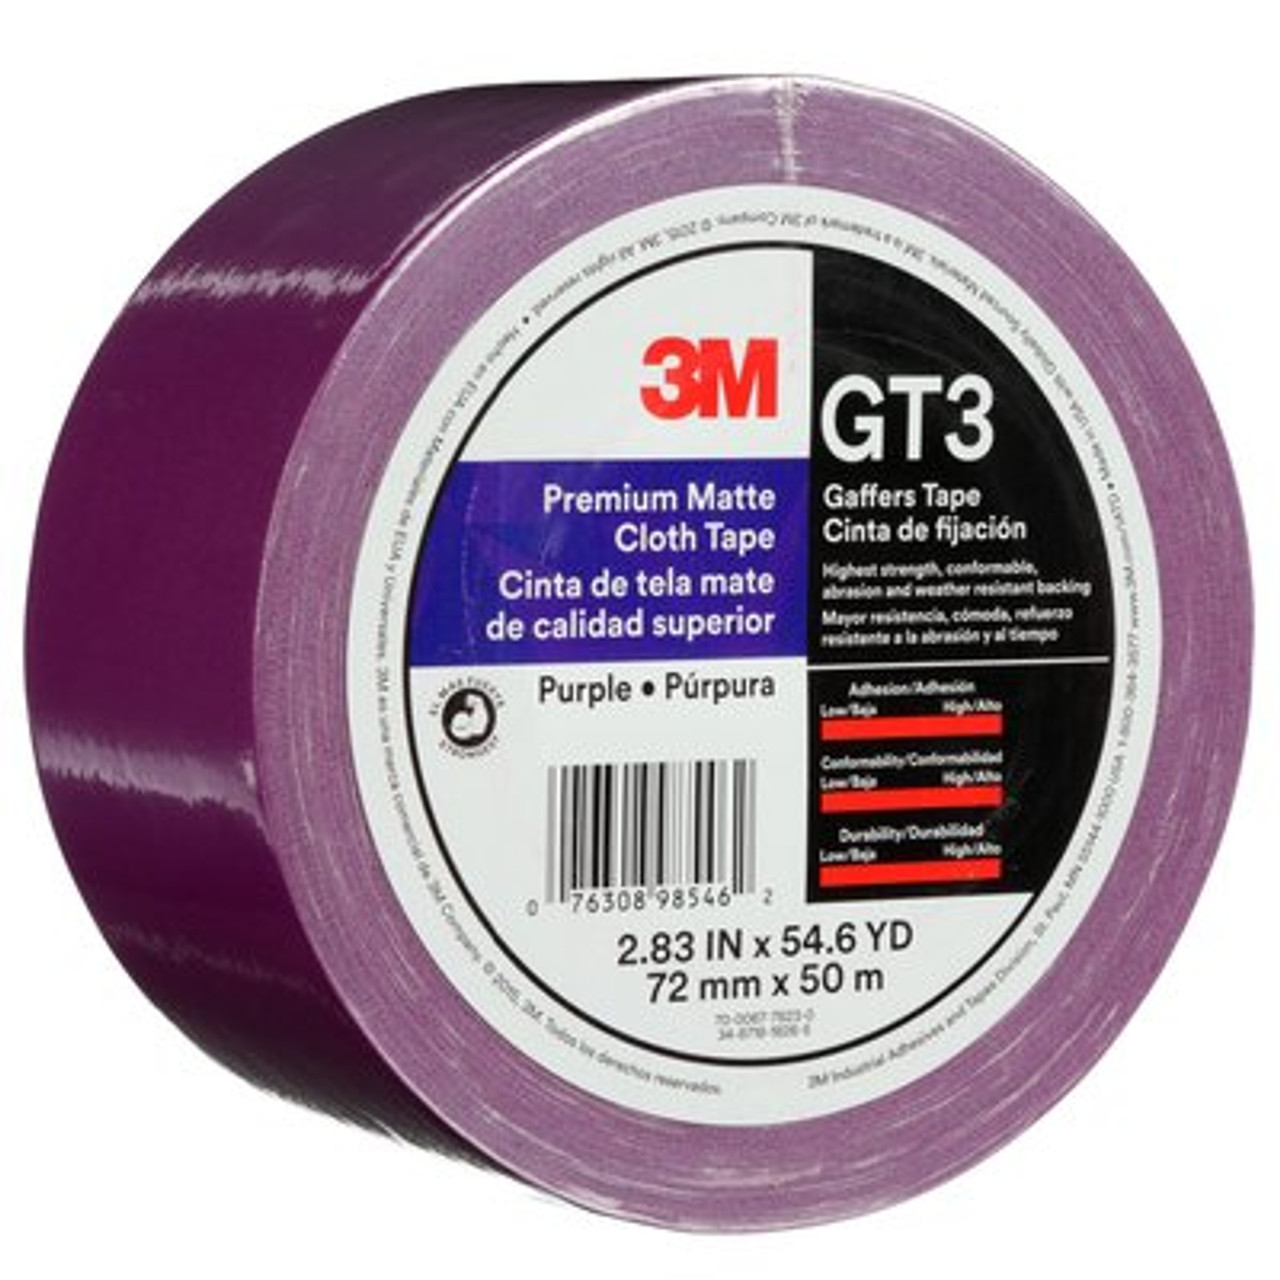 3M™ Premium Matte Cloth (Gaffers) Tape GT3, Purple, 72 mm x 50 m, 11 mil